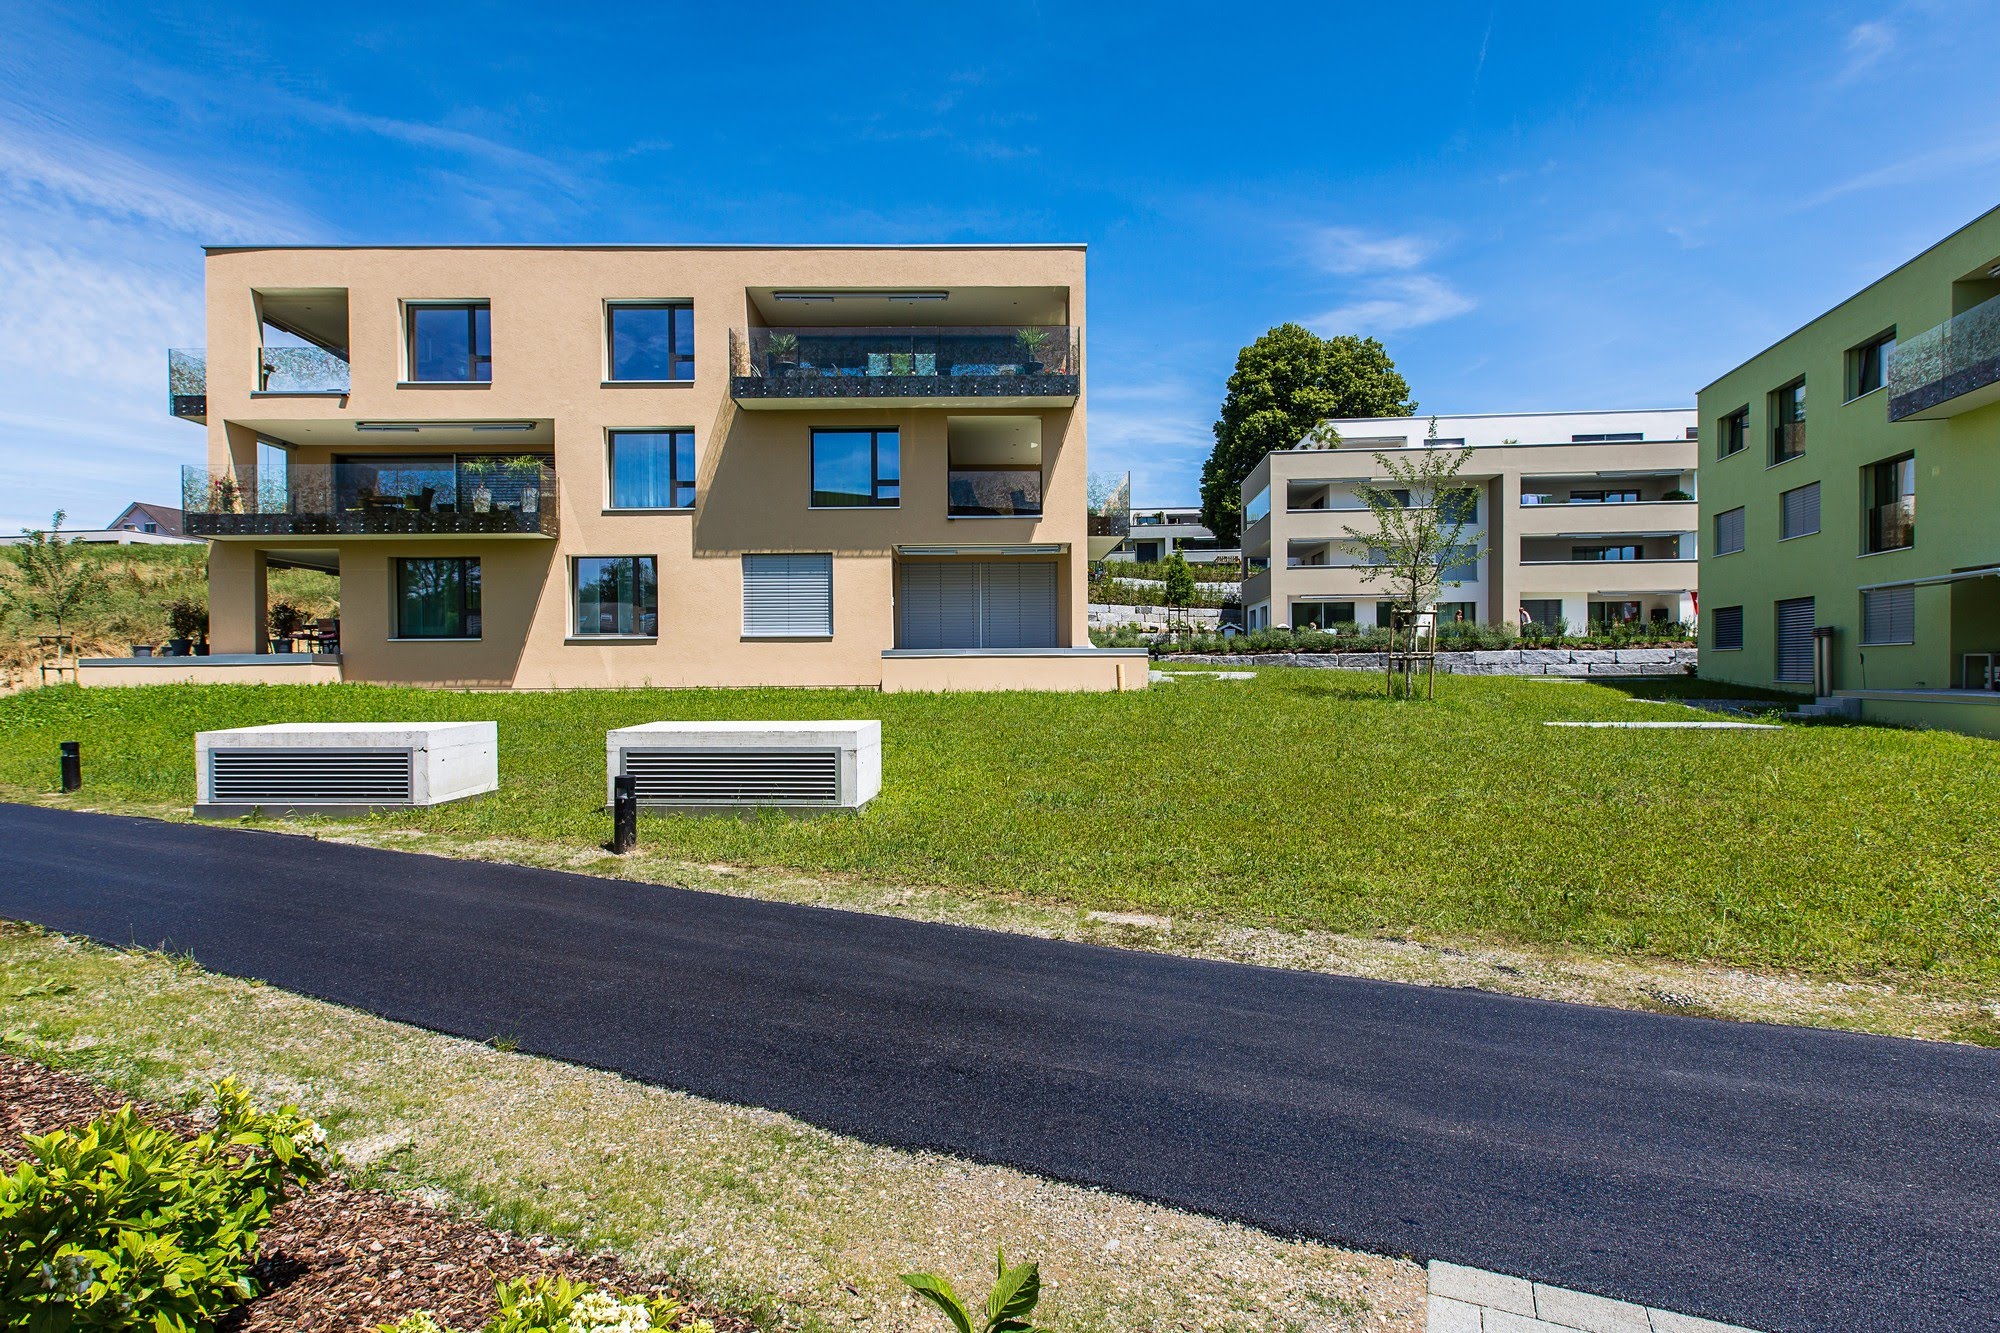 Wohnen MFH 13 MFH in Oberkirch Architektur,Wohnungsbau,Wohnhäuser,Einfamilienhäuser,Mehrfamilienhäuser